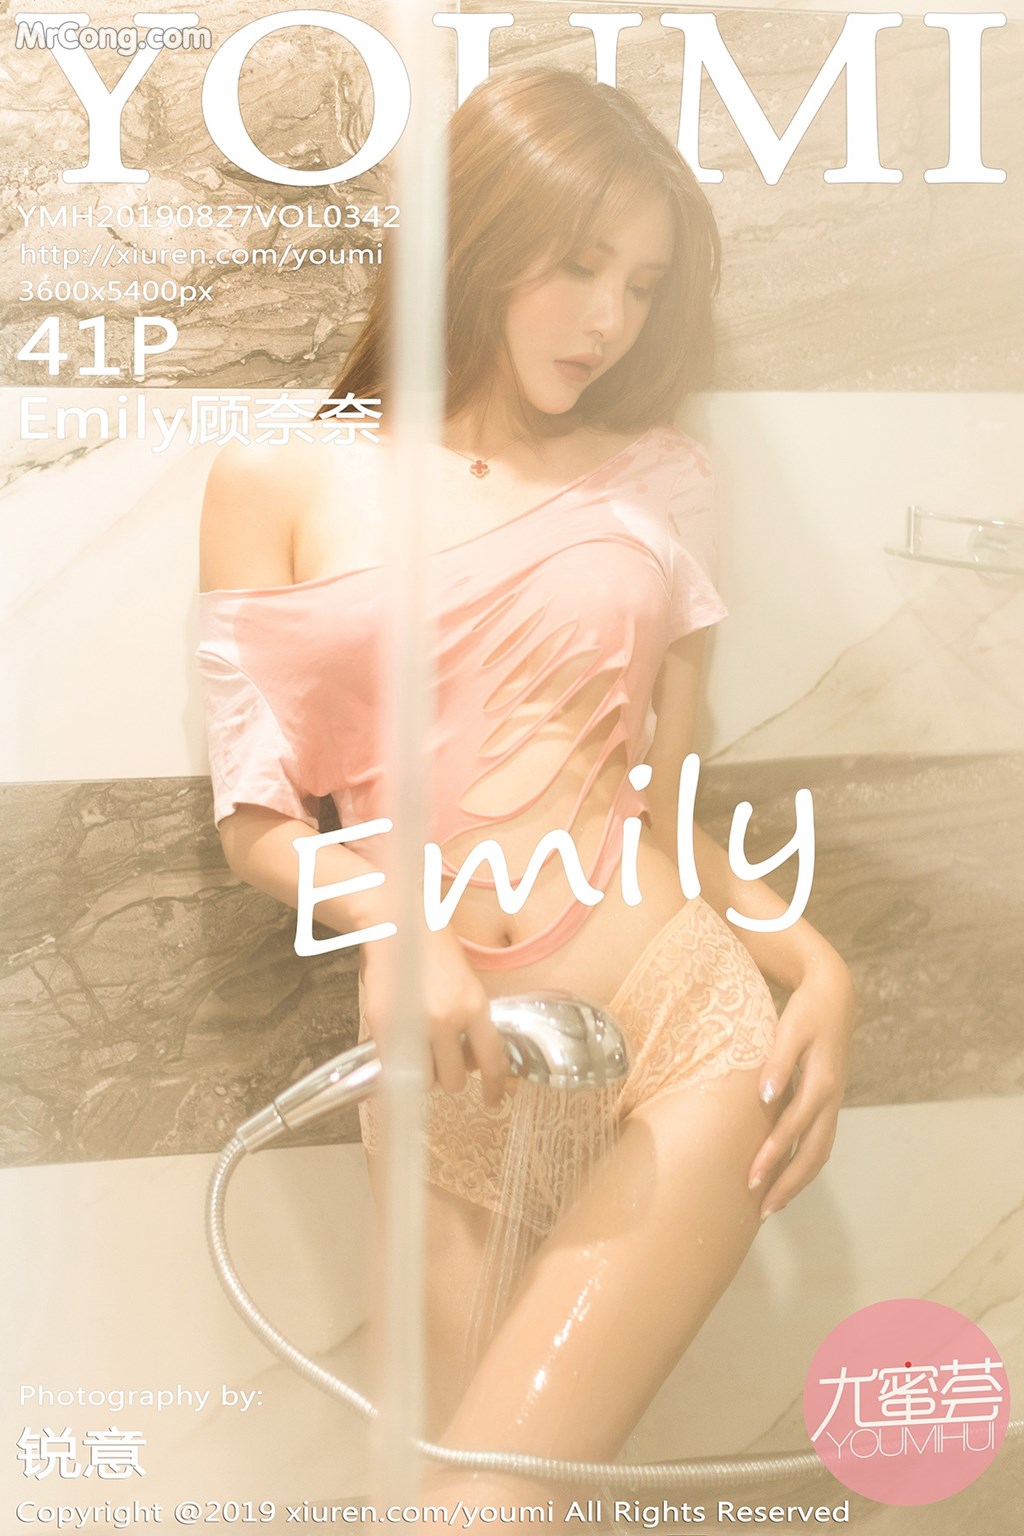 YouMi Vol.342: Emily 顾 奈奈 (42 pictures) photo 1-0